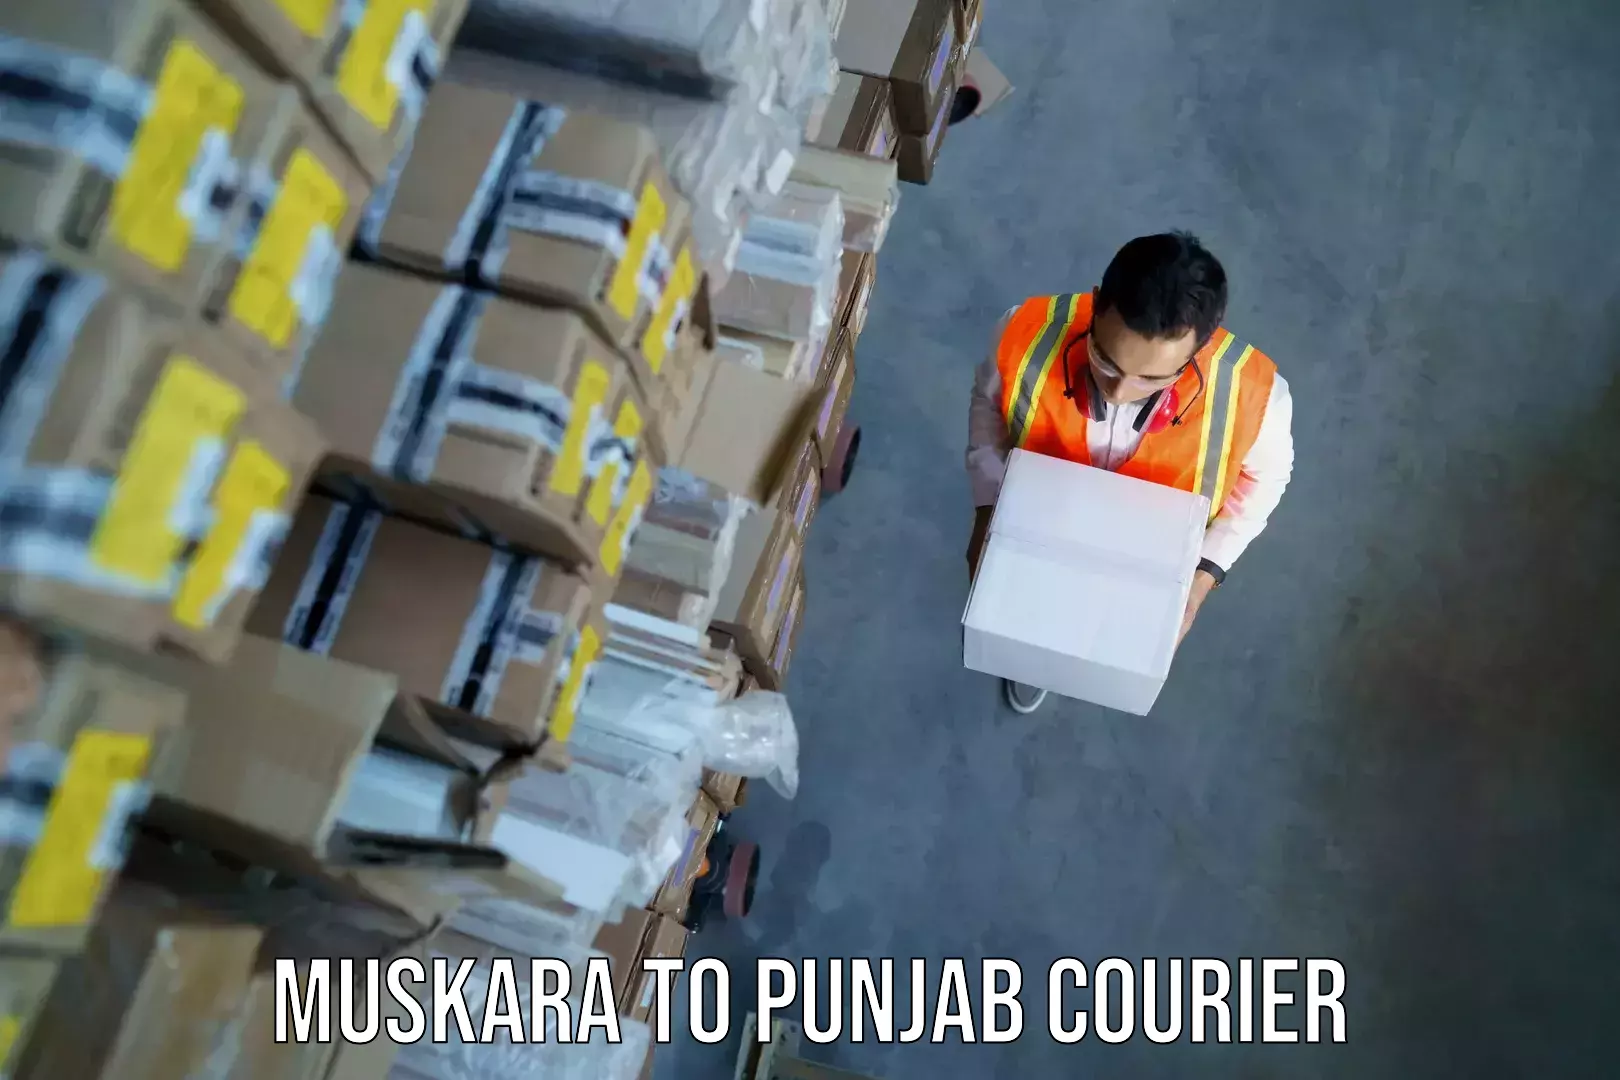 Baggage transport services Muskara to Punjab